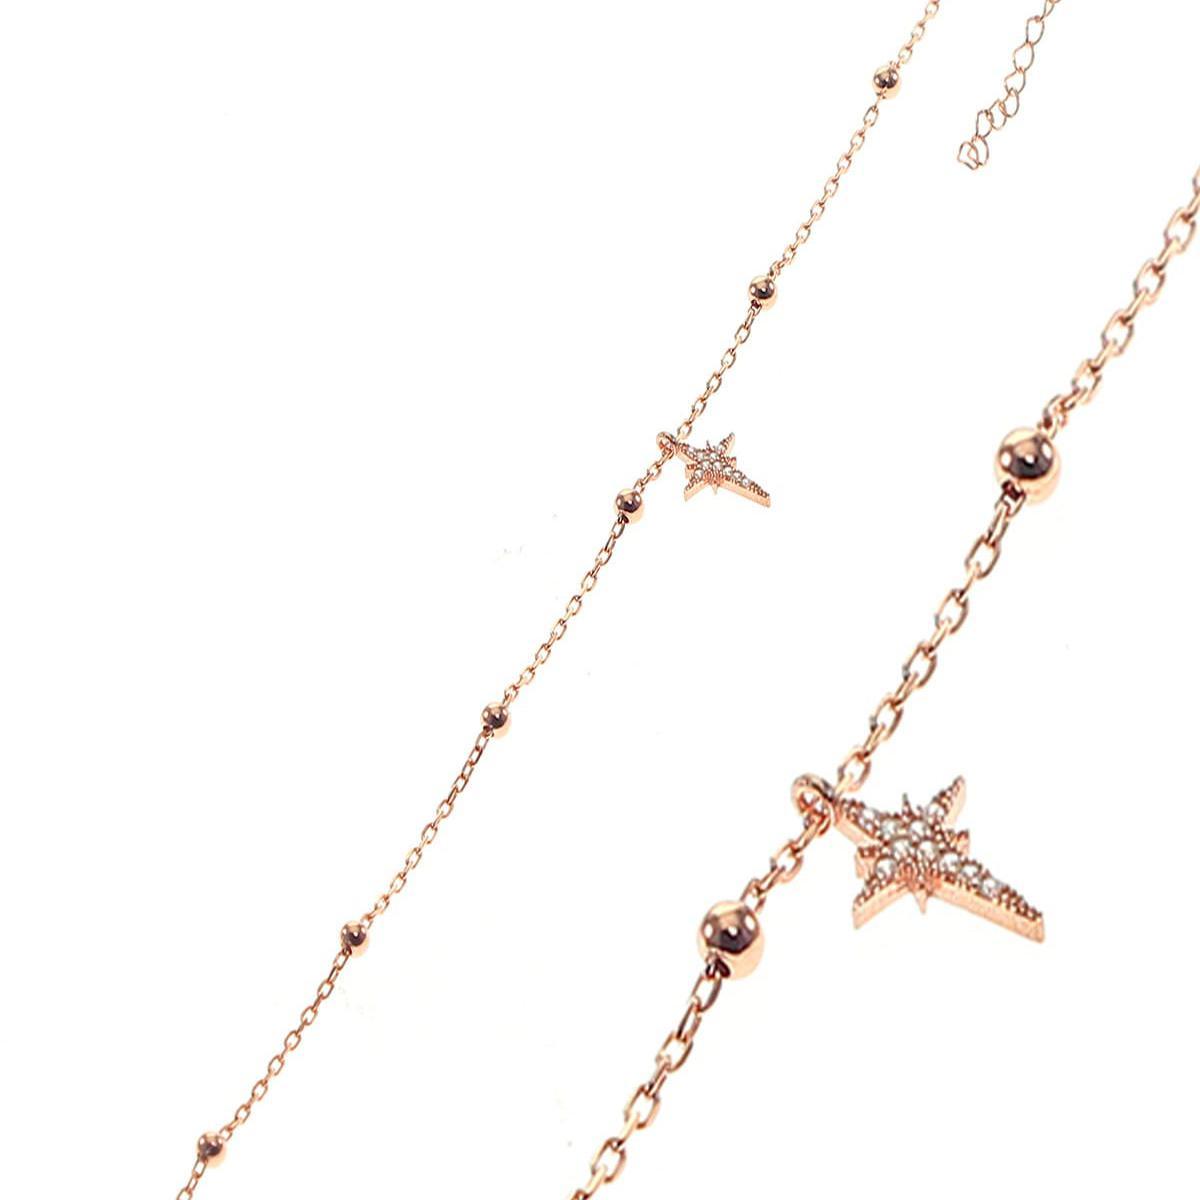 North Star Satellite Chain Bracelet • Celestial Charm Bracelet - Trending Silver Gifts